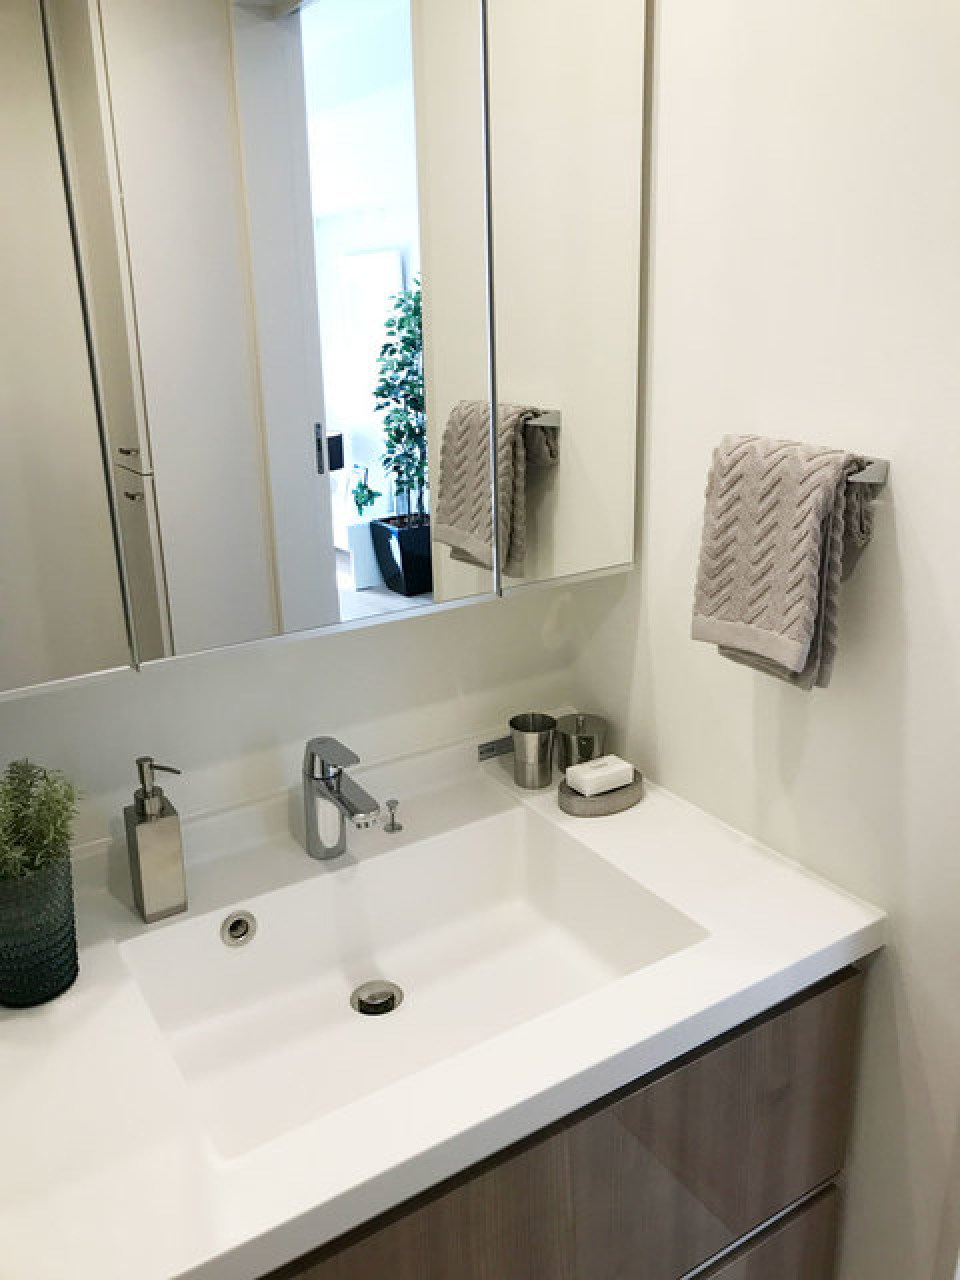 洗面台も大きな鏡がついているので、朝の支度が楽になりそうです！
※写真は同タイプ住戸です。